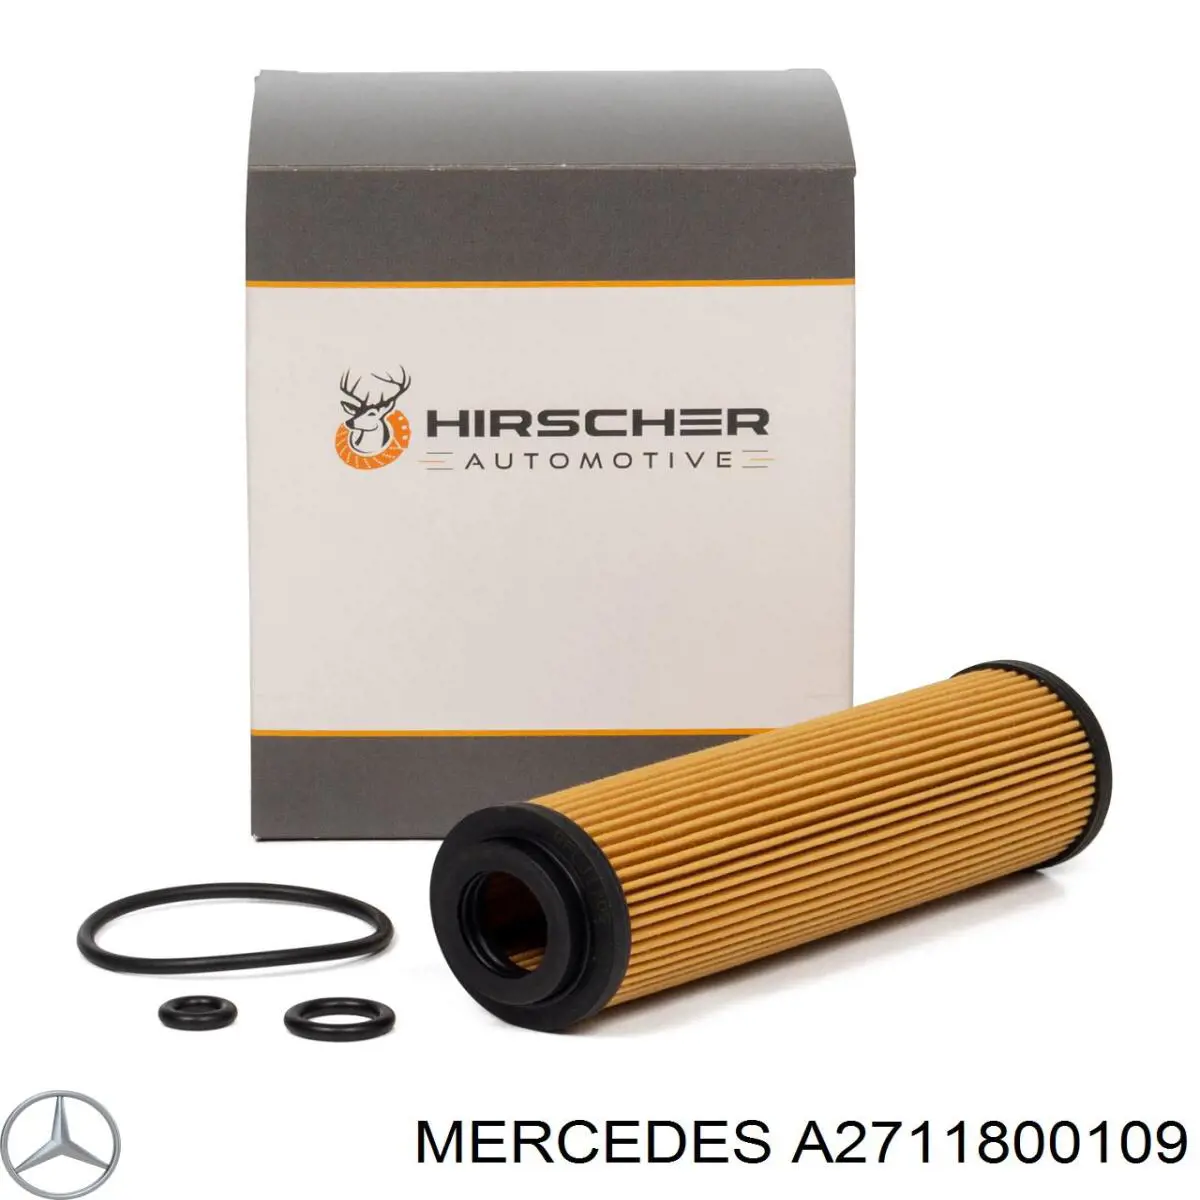 A2711800109 Mercedes filtro de aceite